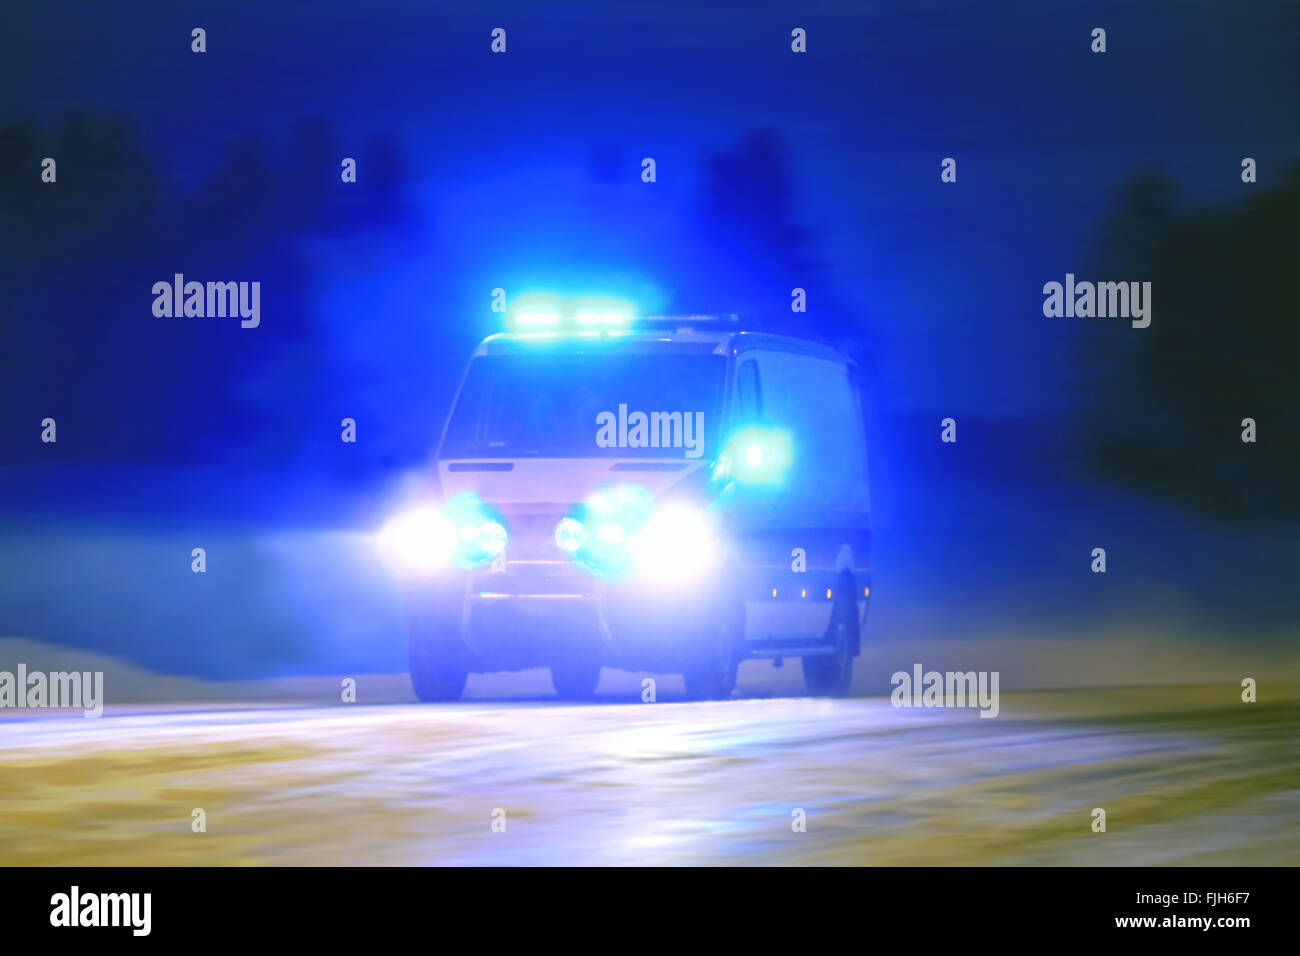 La sirena della notte immagini e fotografie stock ad alta risoluzione -  Alamy